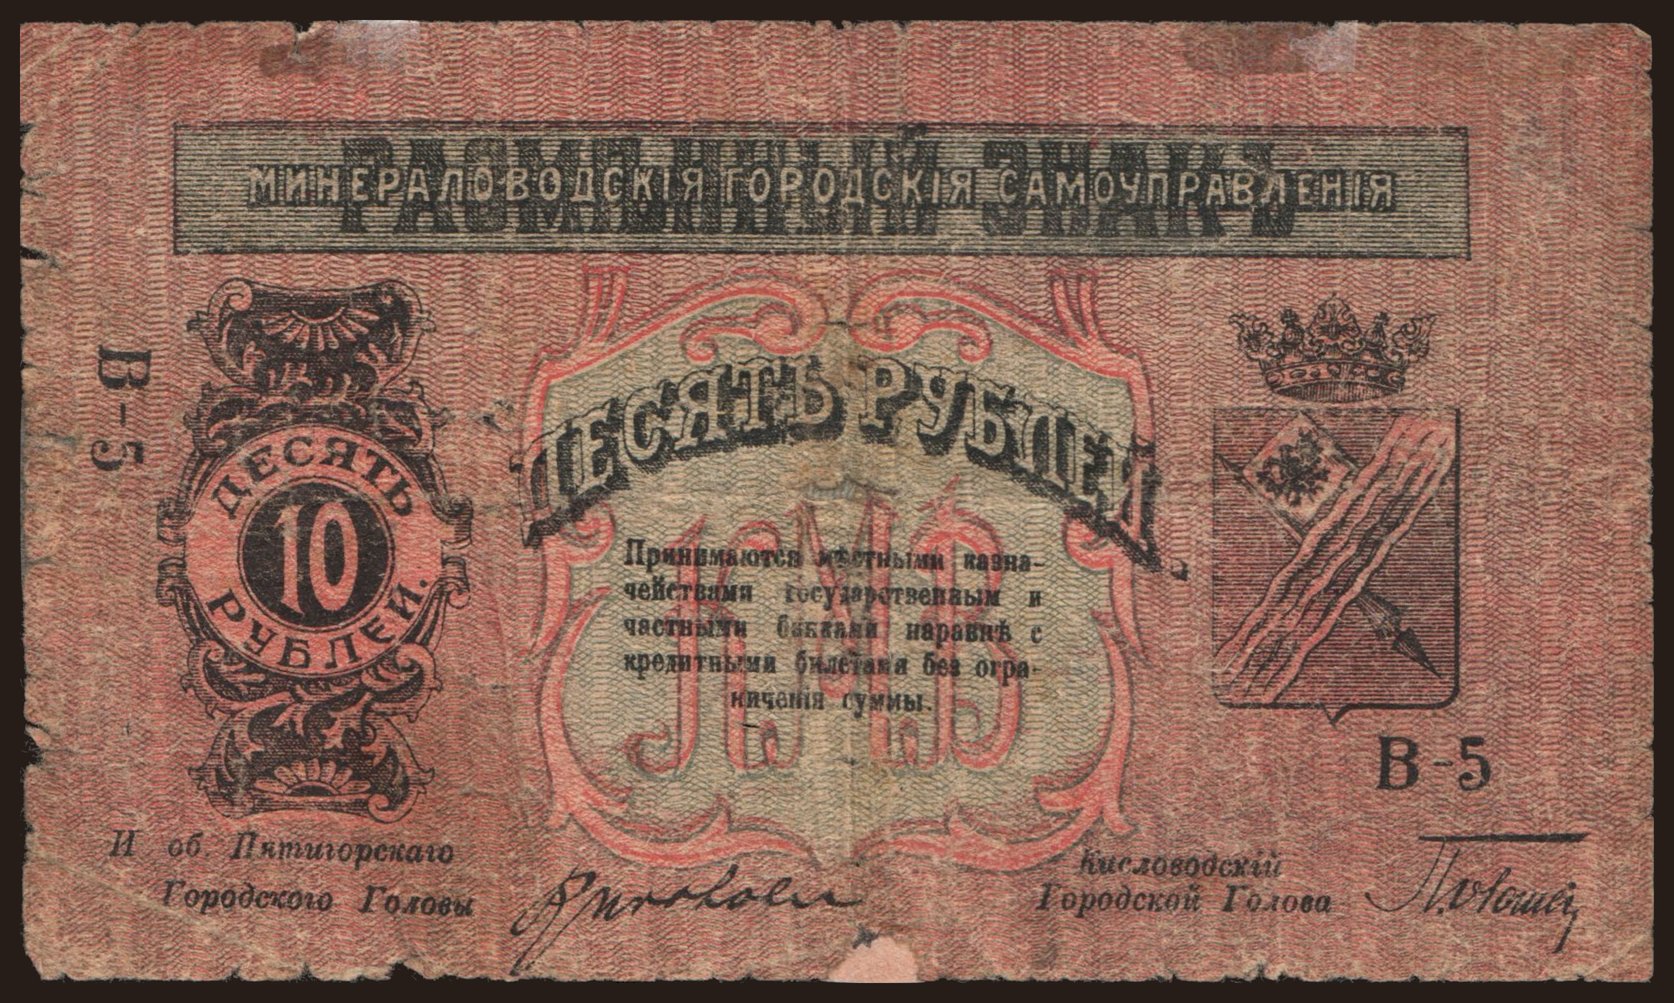 Kislovodsk/ Mineralovodskie Gorodskie Samoupravlenija, 10 rubel, 1918